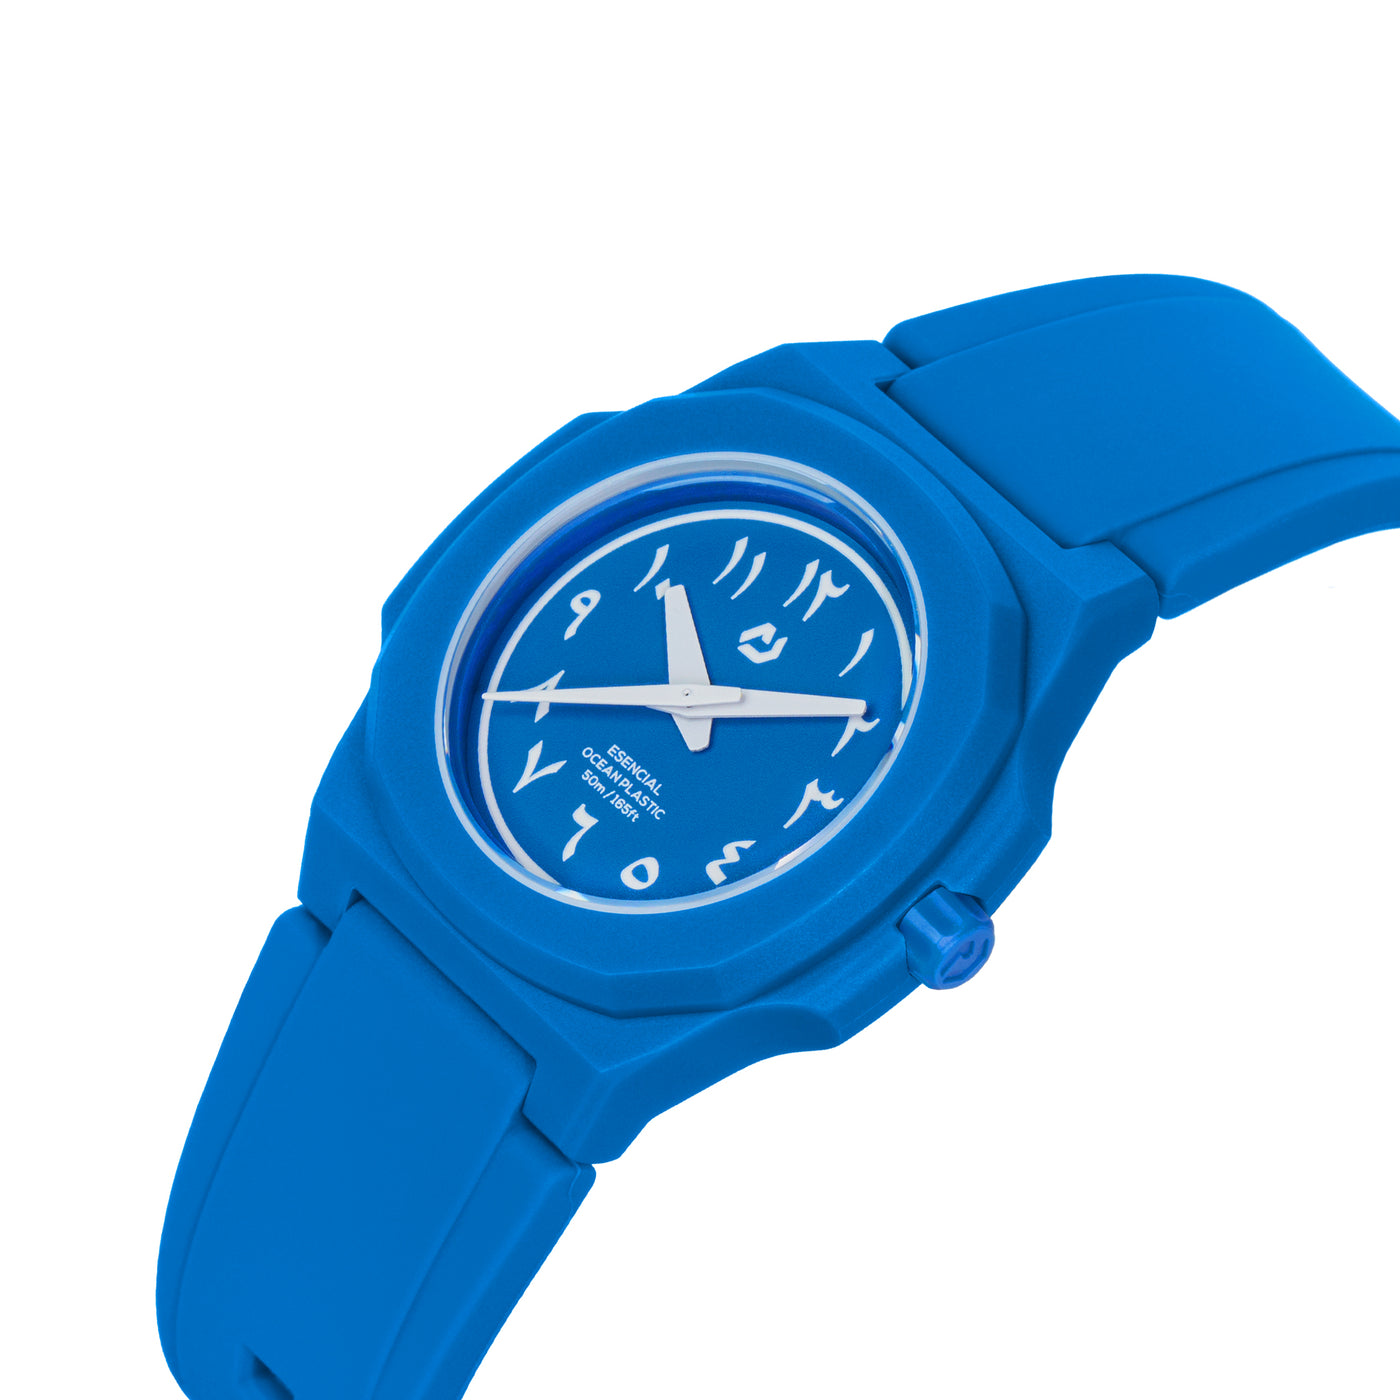 ساعة يد للأطفال من إسينسيال بلون أزرق